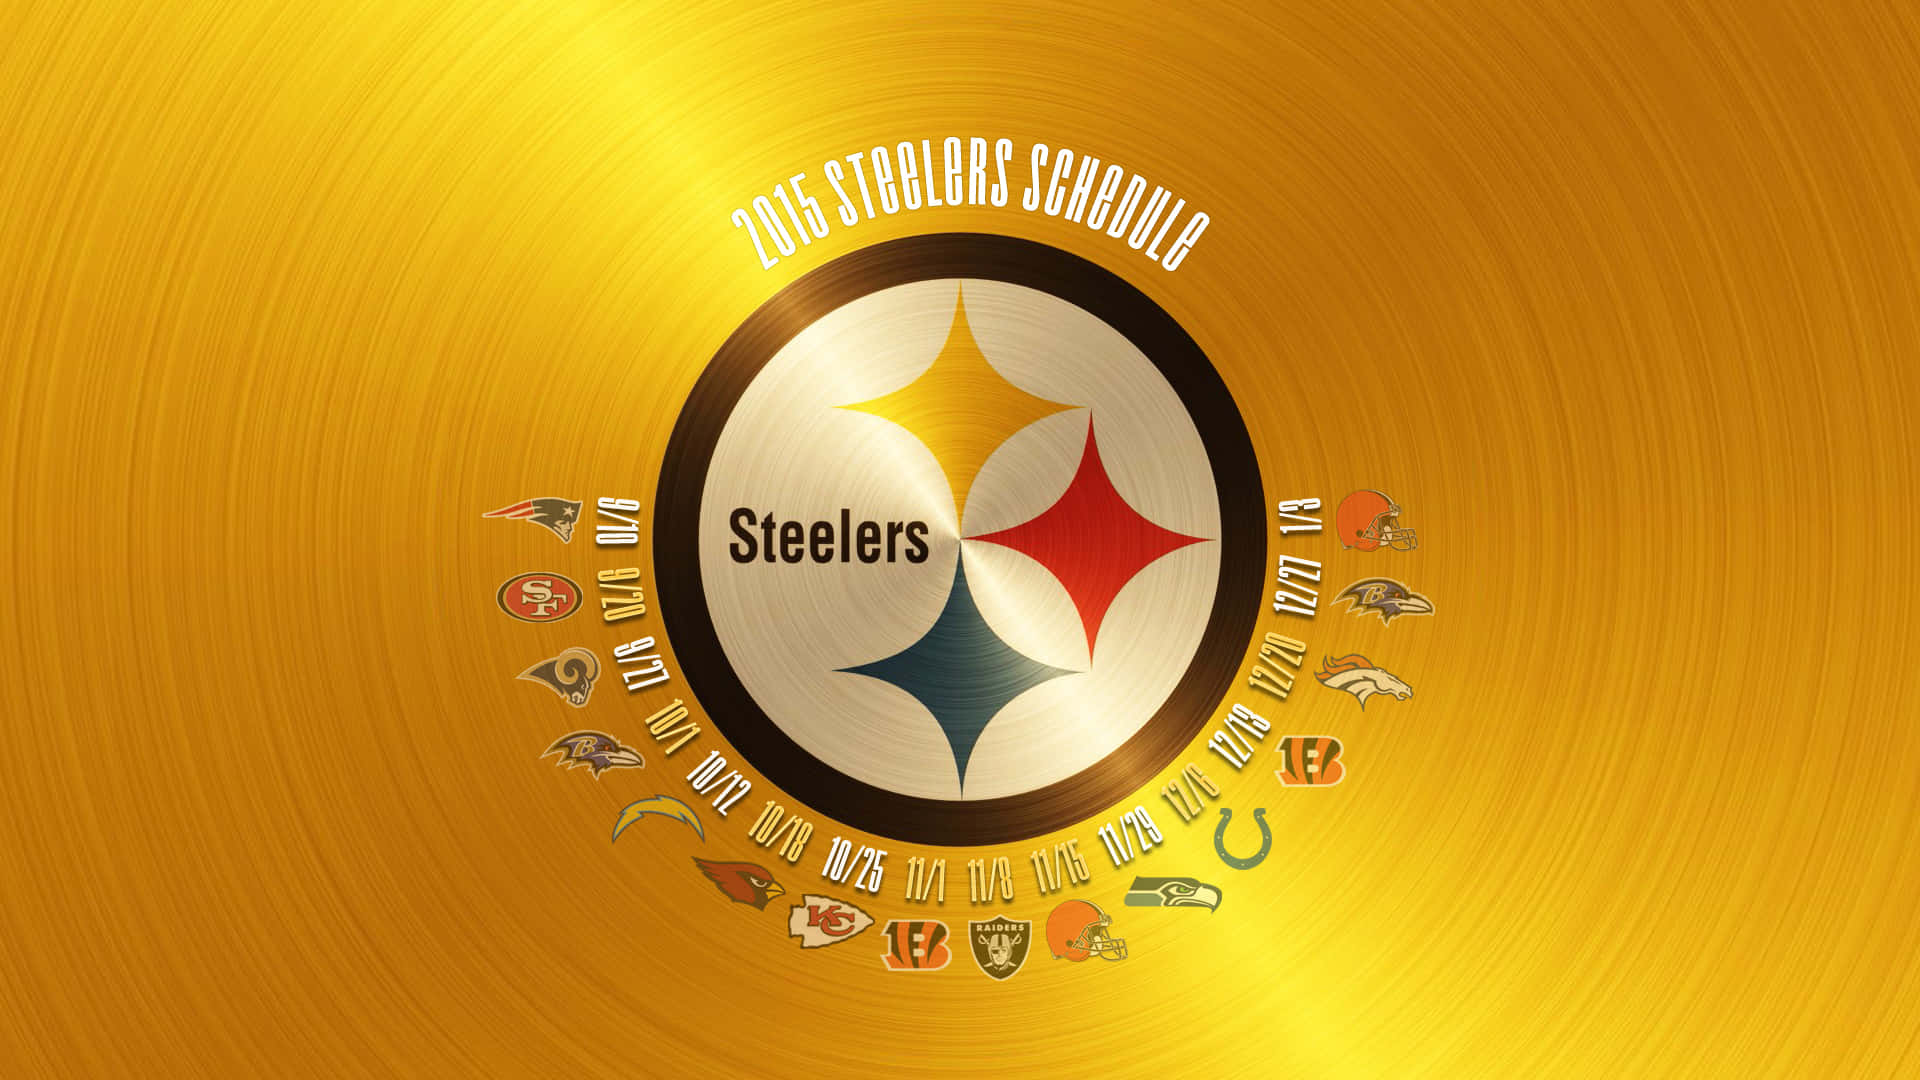 Steelers-logo 1920 X 1080 Wallpaper